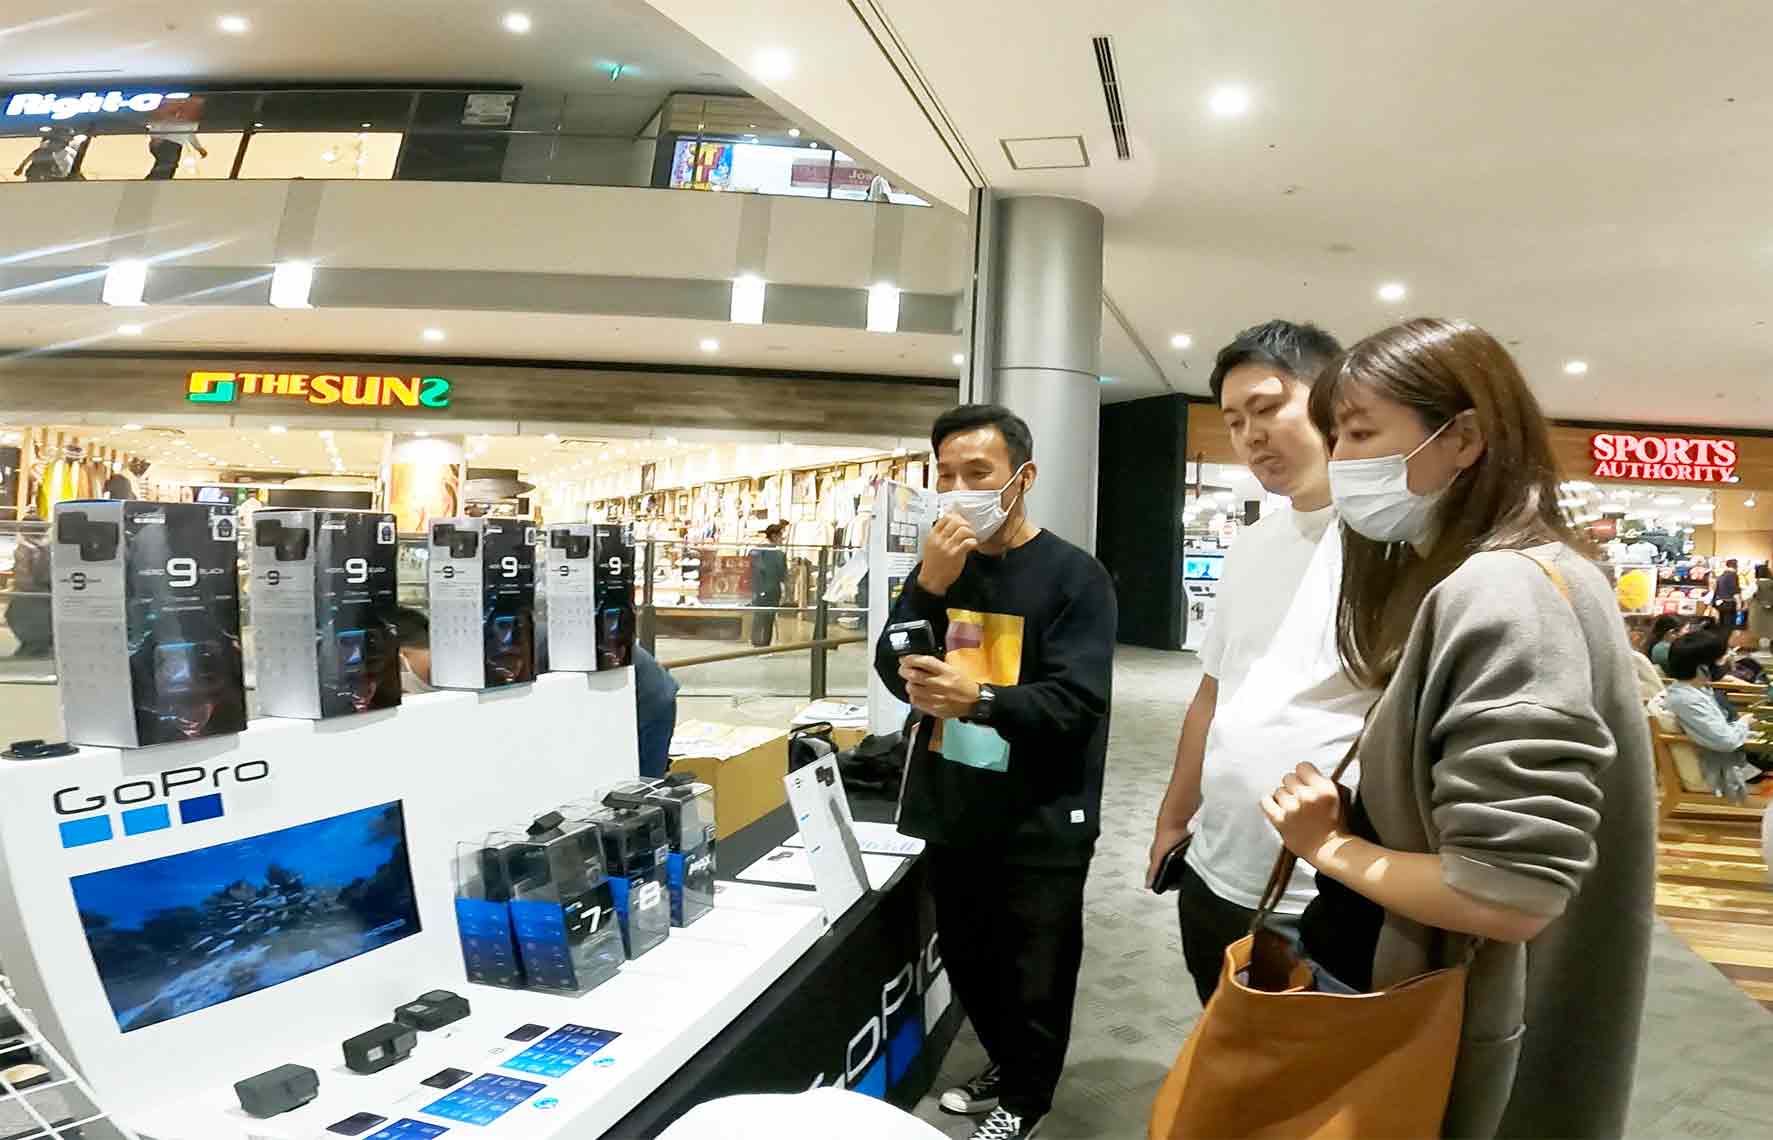 GoProをはじめよう! タッチ&トライ（+お得な即売会）イベントを、9/26(土)、27(日)「THE SUNS イオンモール四條畷店」で開催しました!